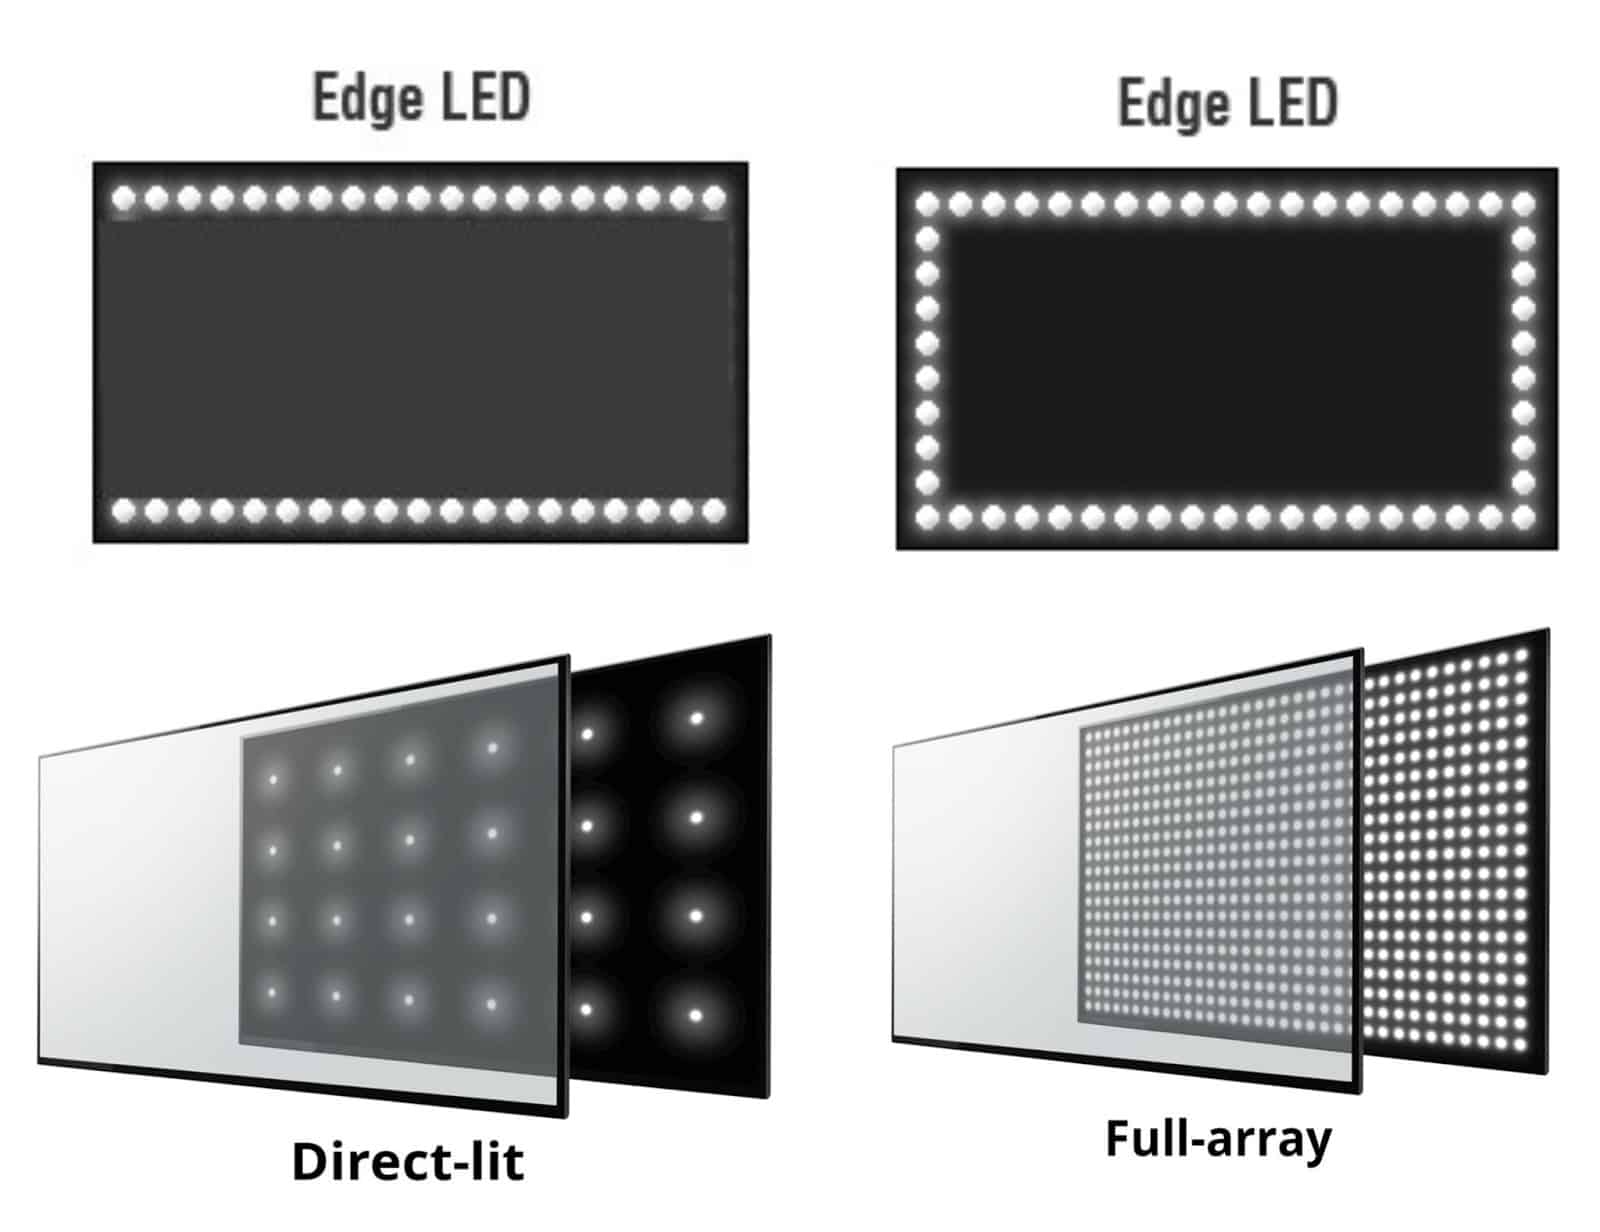 Типы подсветки матриц Edge LED и Direct LED - что лучше и какие отличия